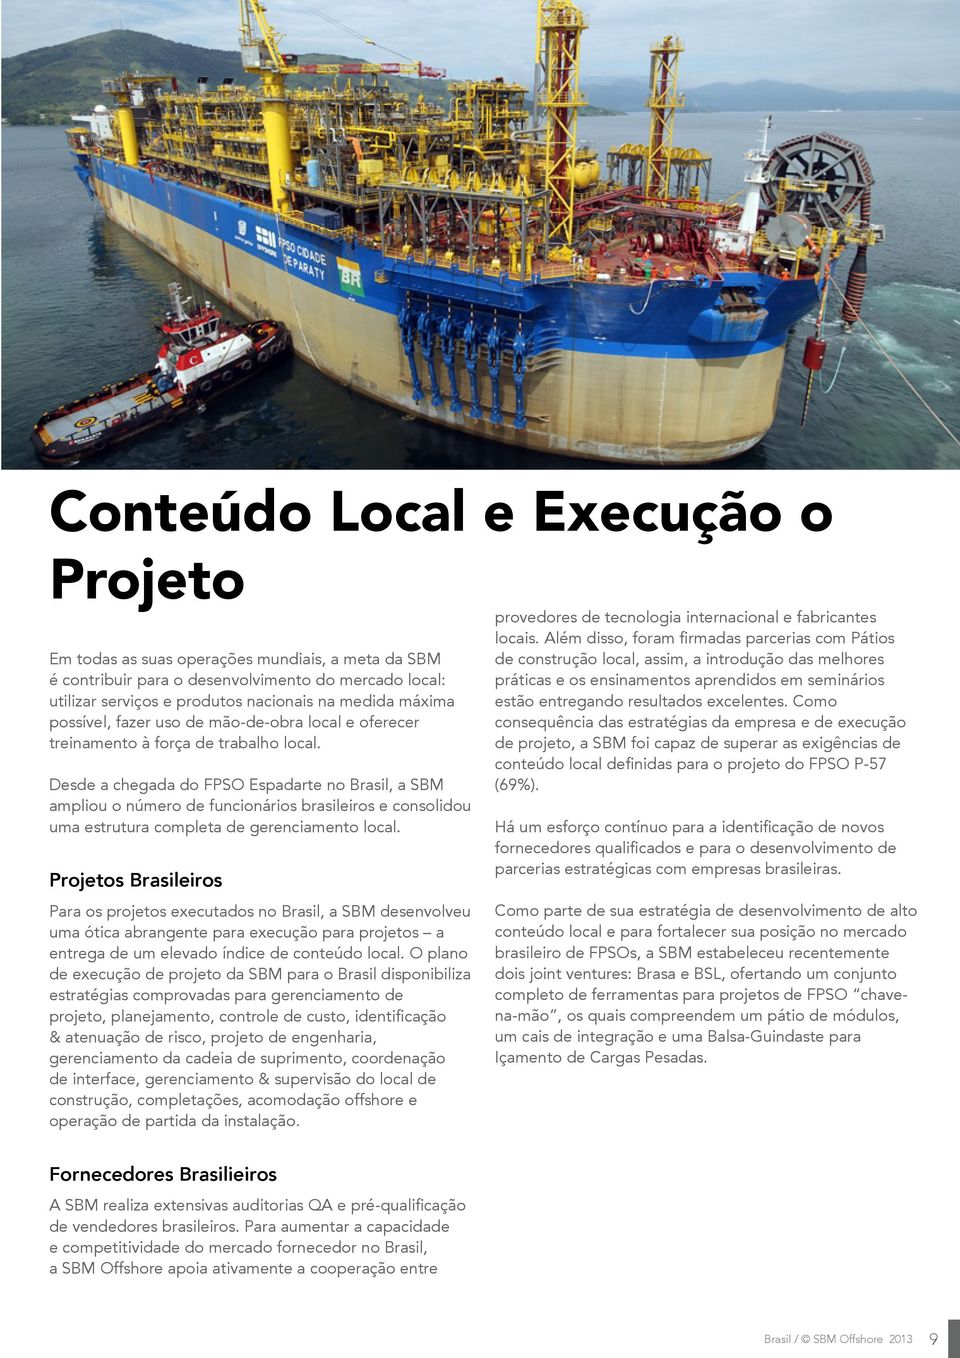 Desde a chegada do FPSO Espadarte no Brasil, a SBM ampliou o número de funcionários brasileiros e consolidou uma estrutura completa de gerenciamento local.